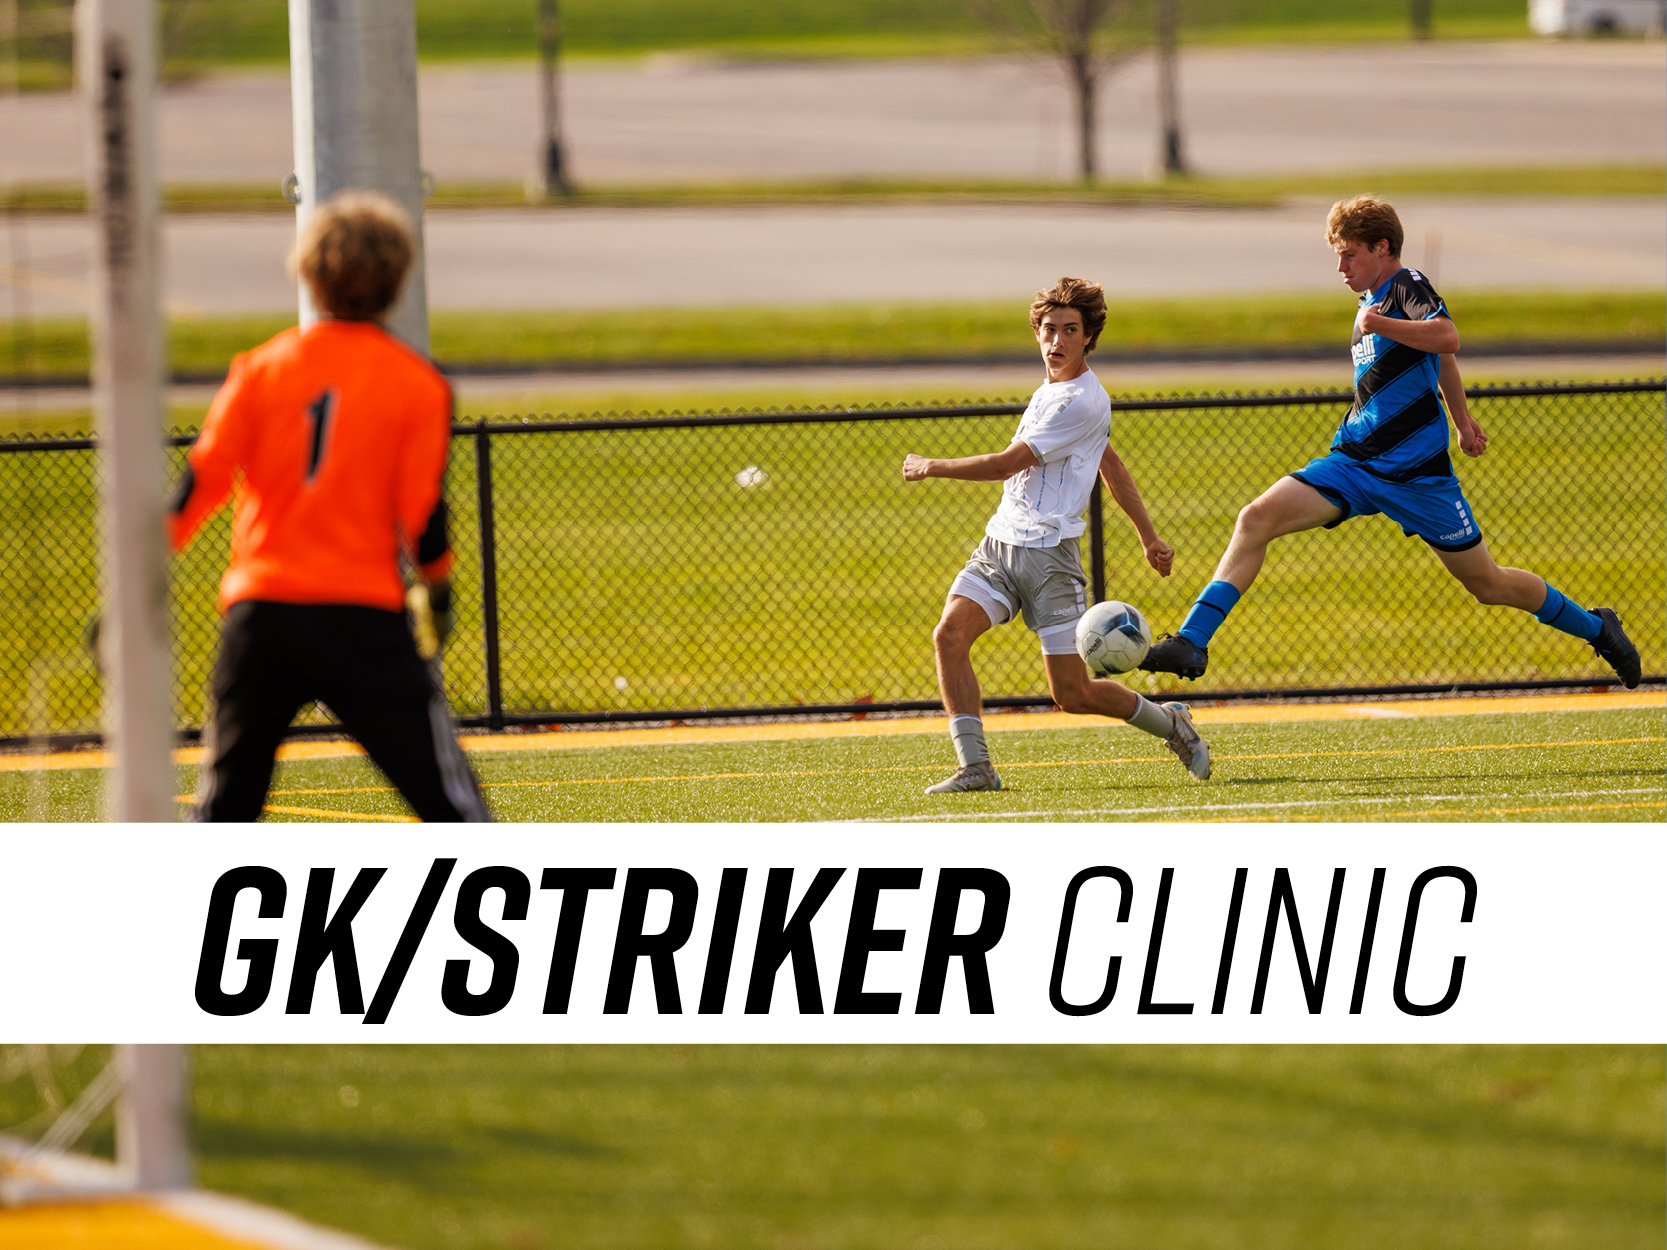 GK_Strkier Clinic